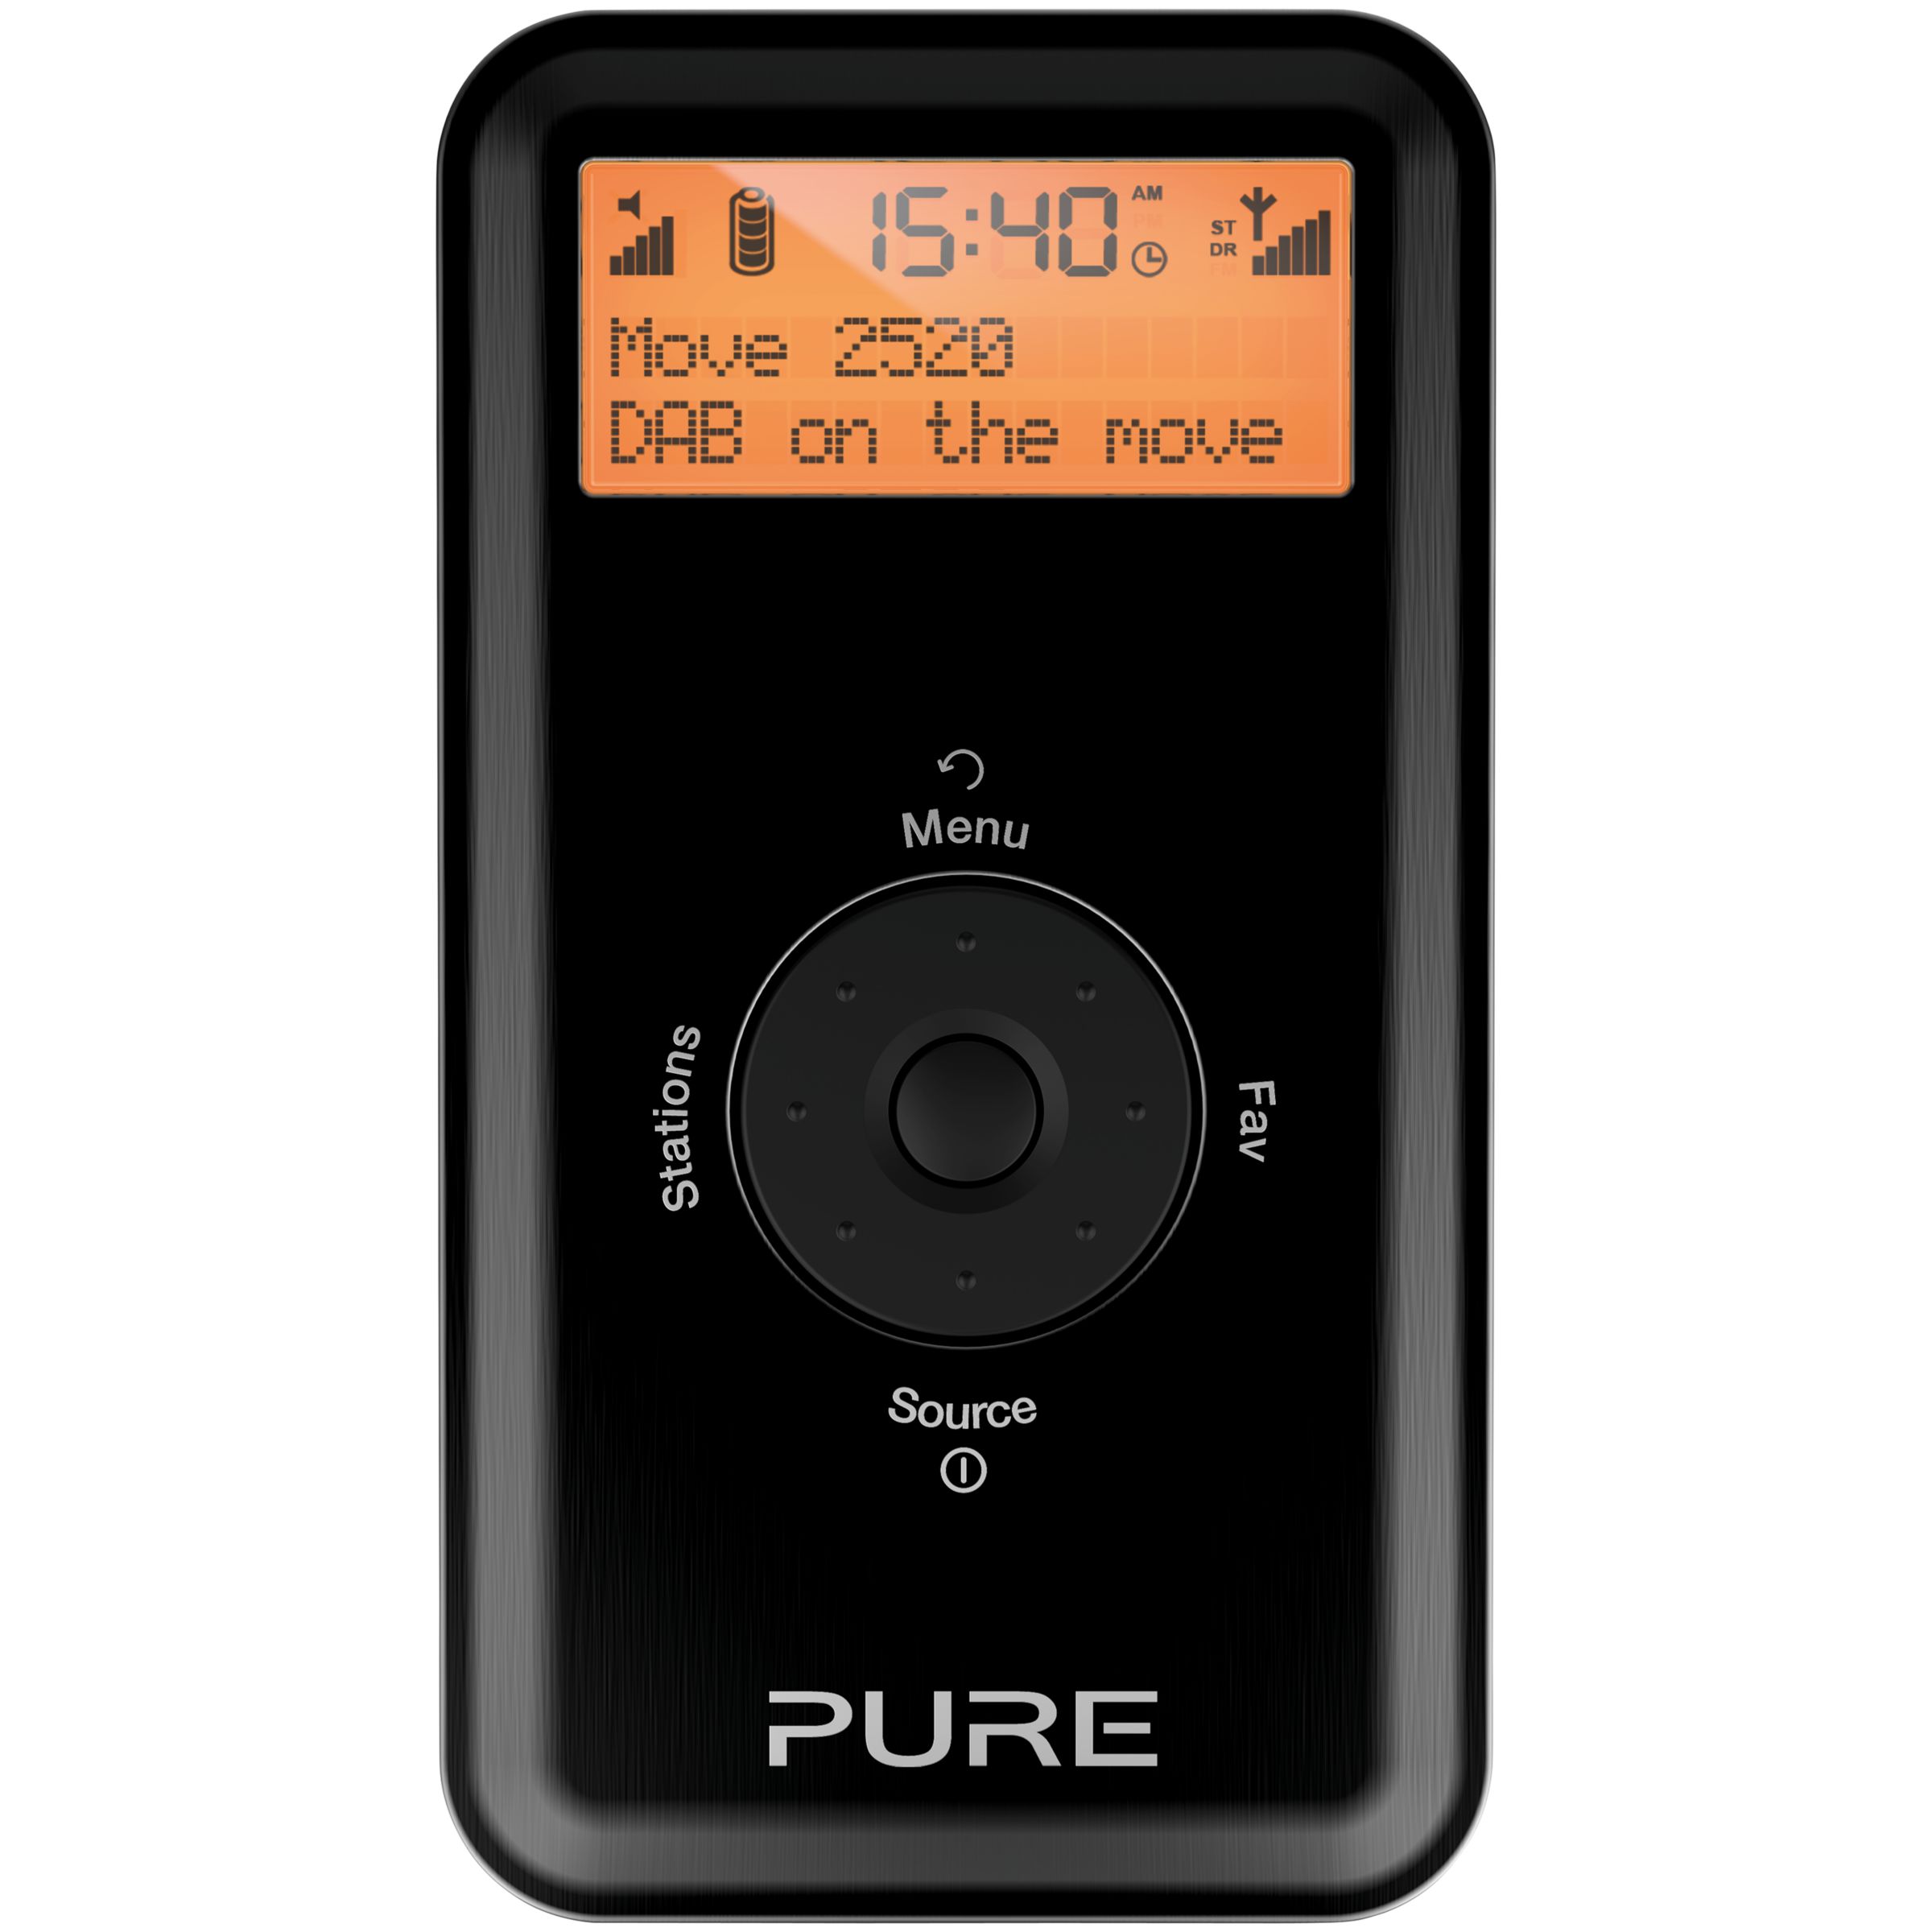 Pure Move 2520 DAB/FM Personal Stereo Radio